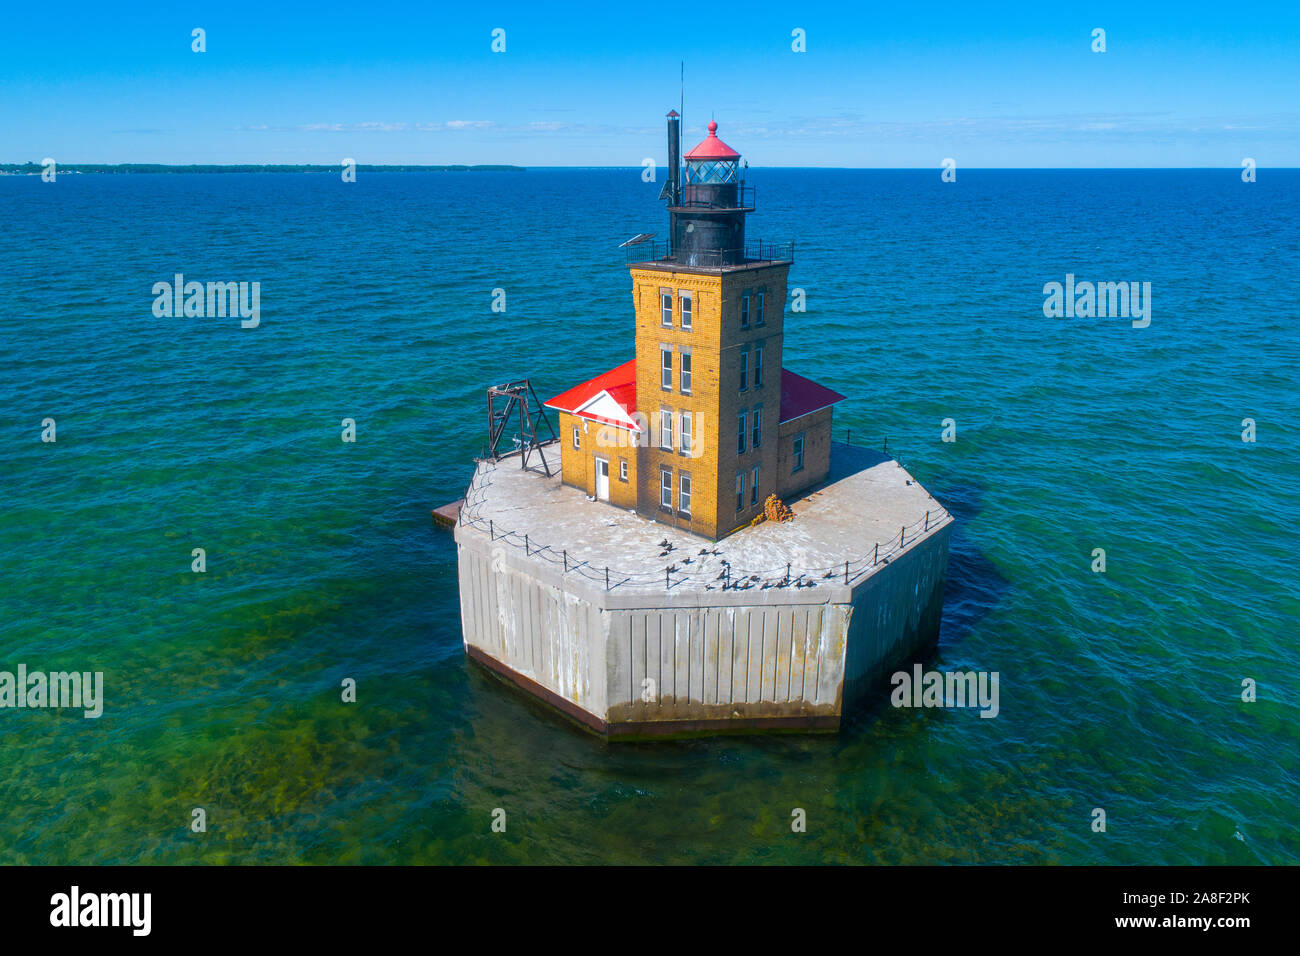 Port Austin Lighthouse ist ein Leuchtturm vor der Küste des Lake Huron, etwa 2,5 km nördlich von Port Austin, Huron County Michigan auf einem felsigen ree Sitzen Stockfoto